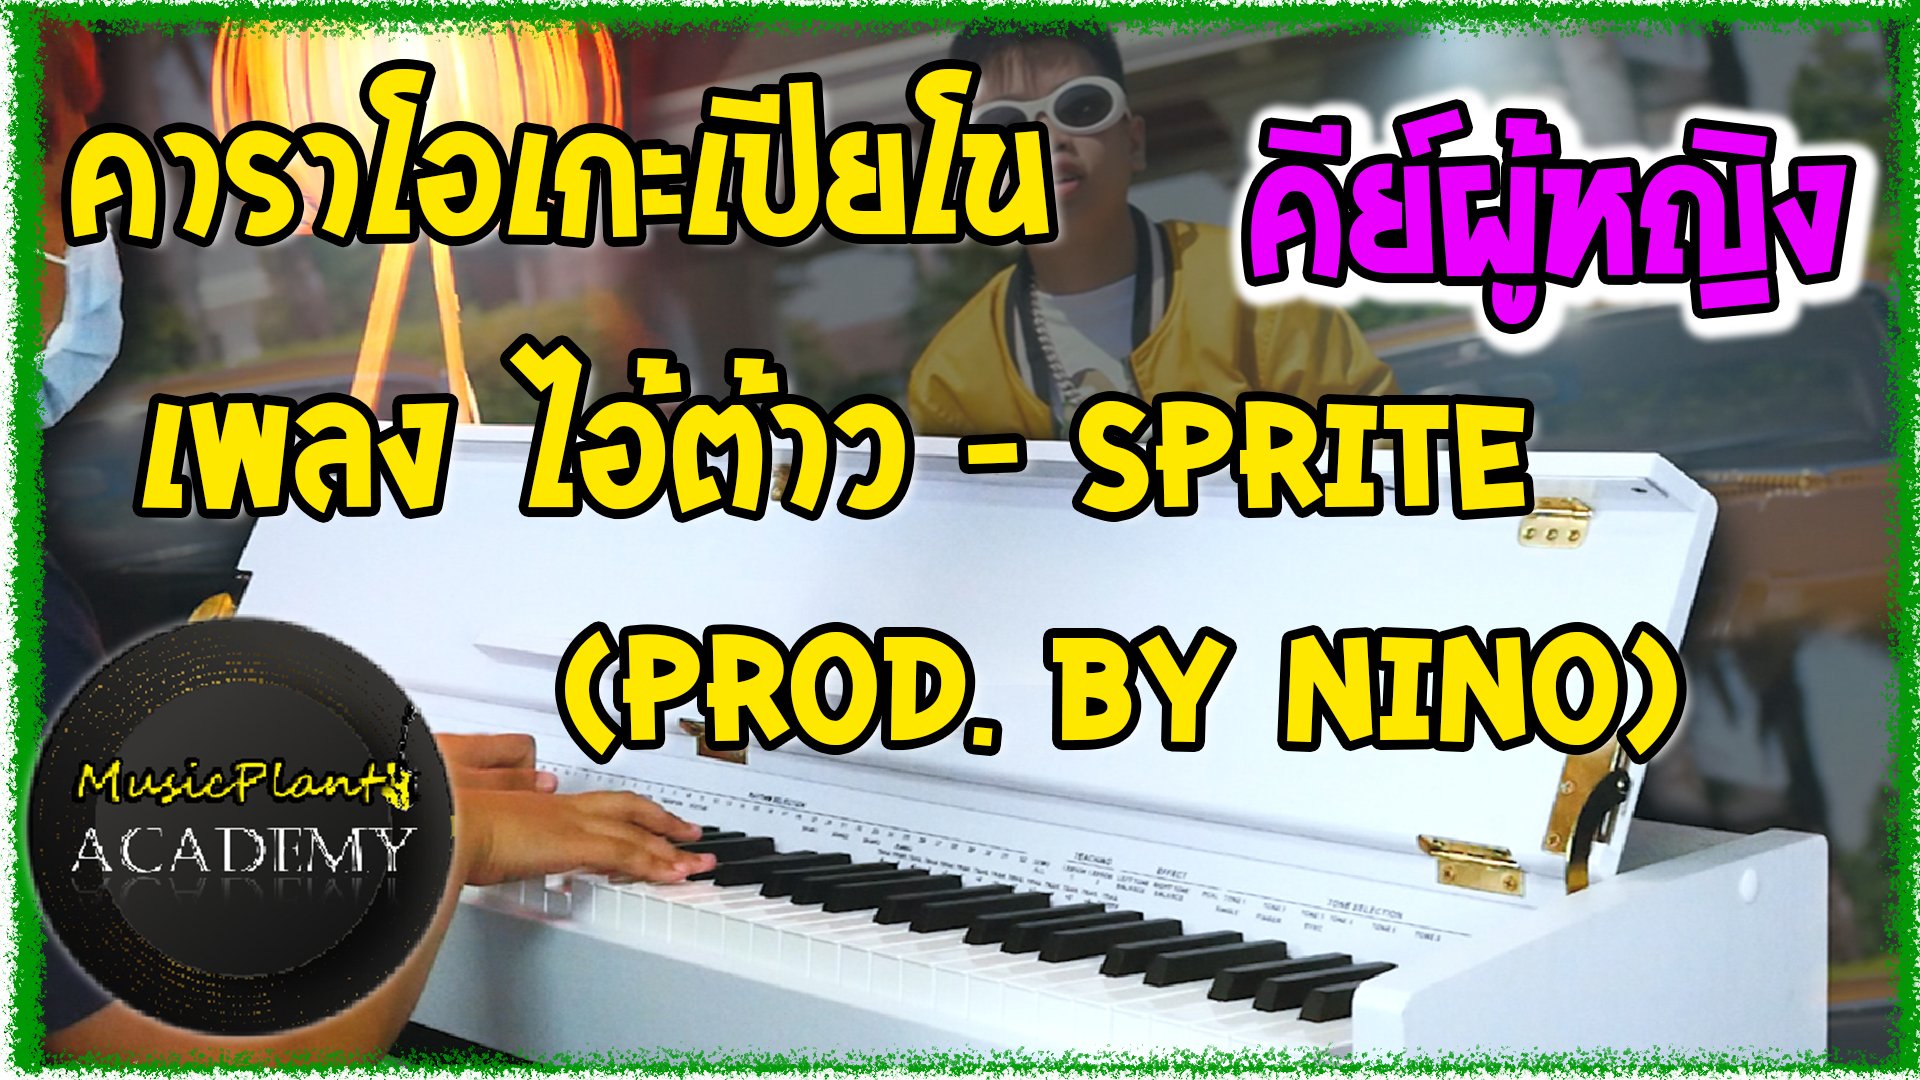 คาราโอเกะเปียโน Cover เพลง ไอ้ต้าว SPRITE - (Prod. By NINO) คีย์ผู้หญิง